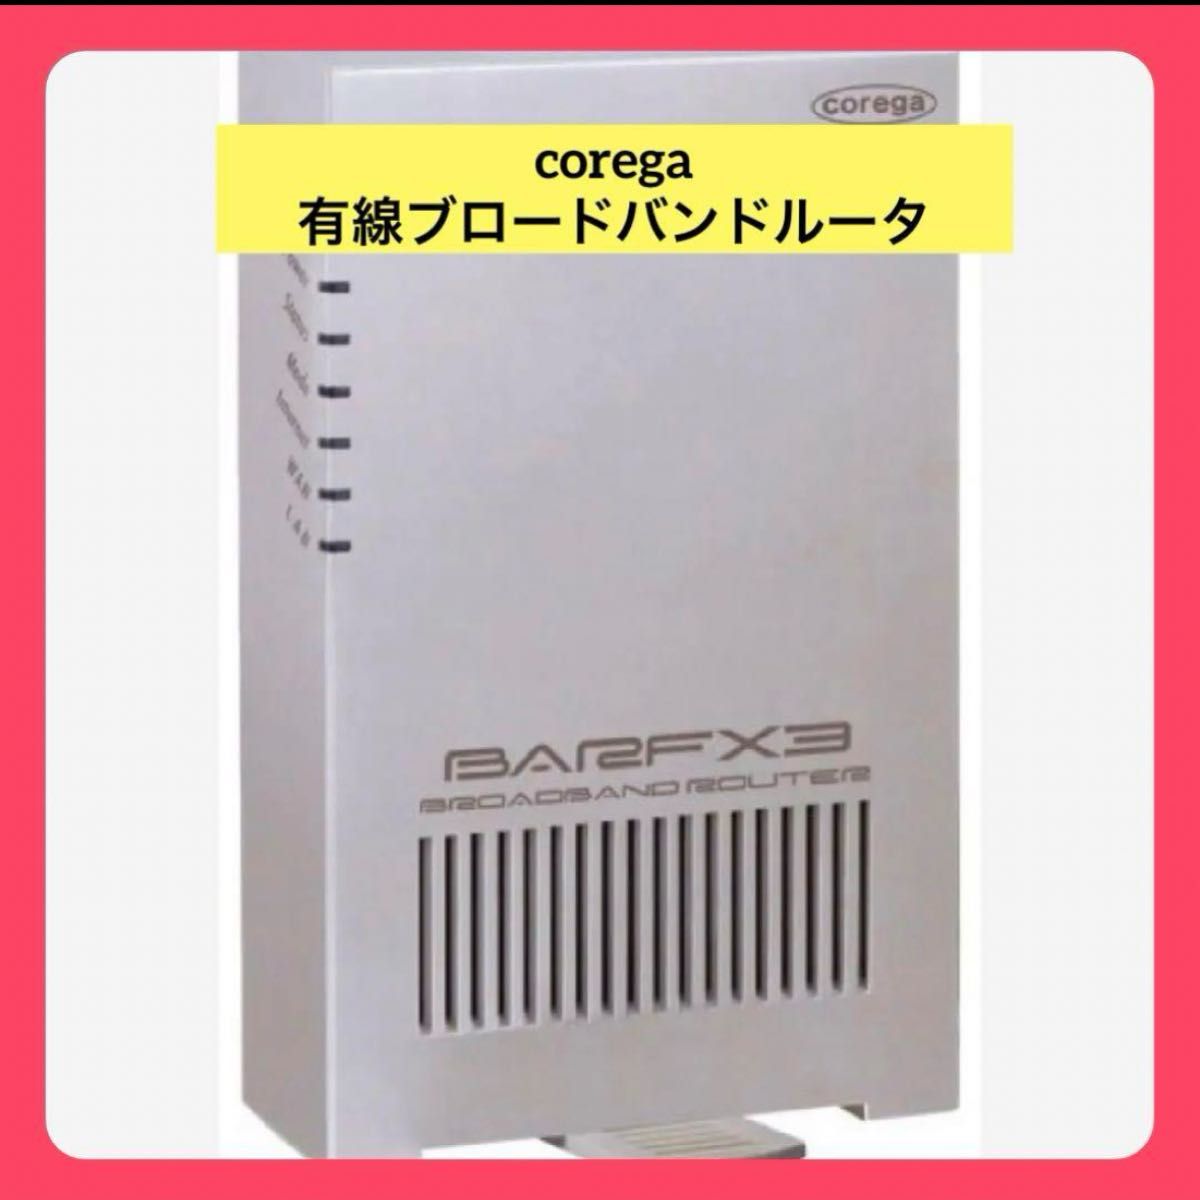 corega 有線ブロードバンドルータ ホワイト CG-BARFX3